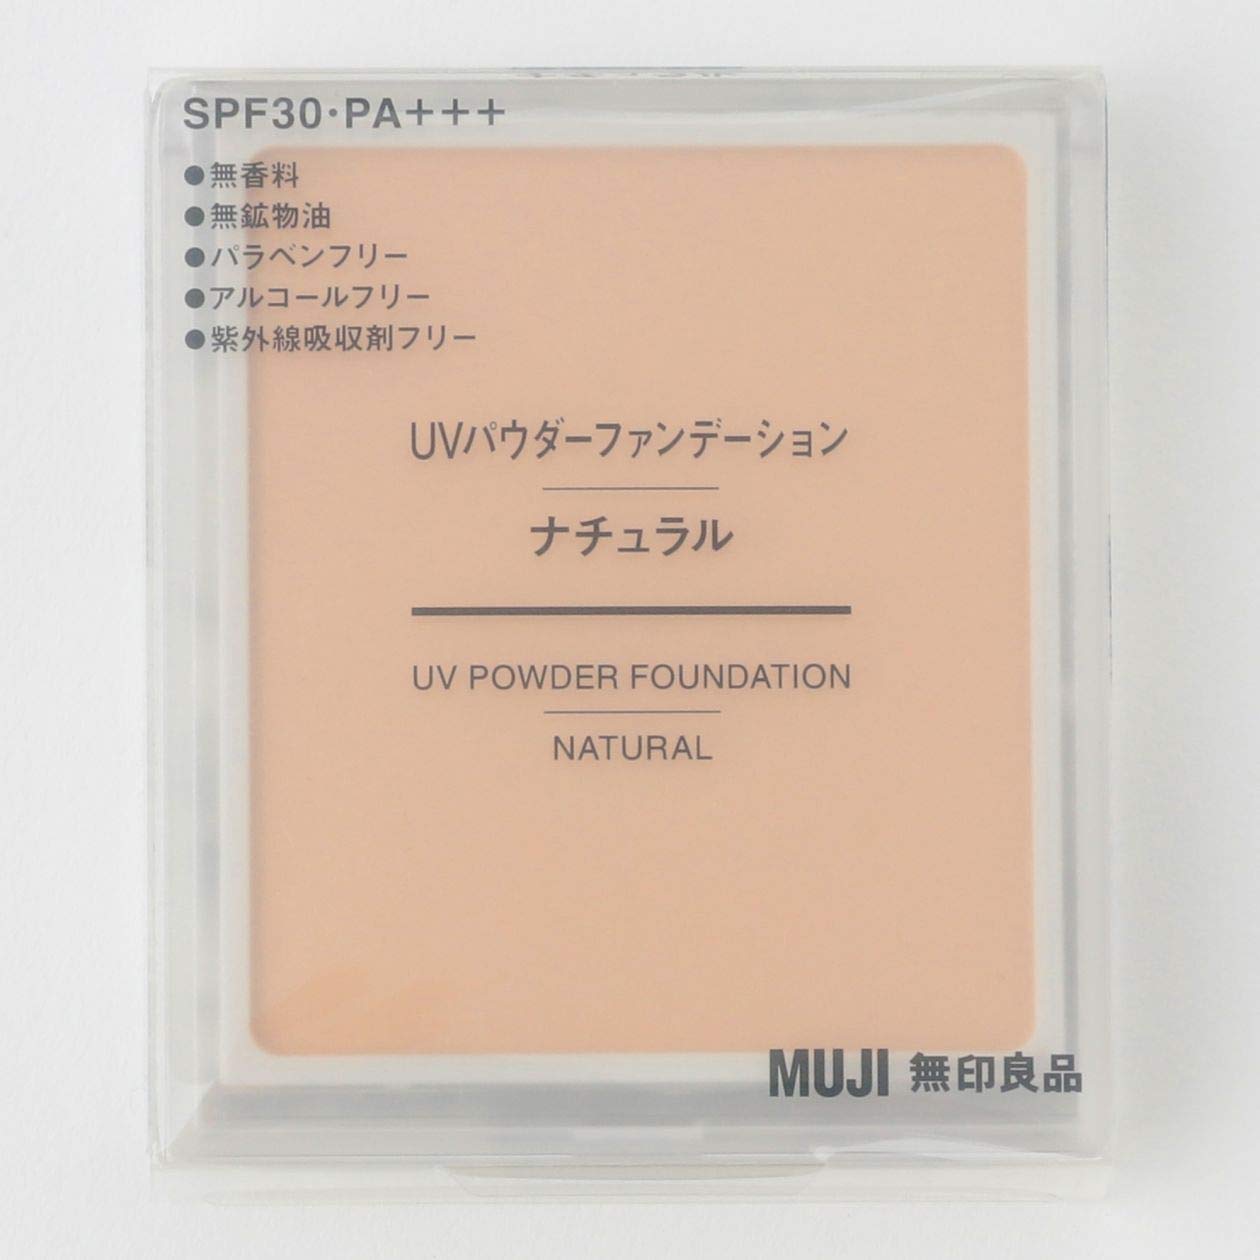 Muji Uv Powder Foundation Natural Spf30 Pa+++ 9.4G 02545918